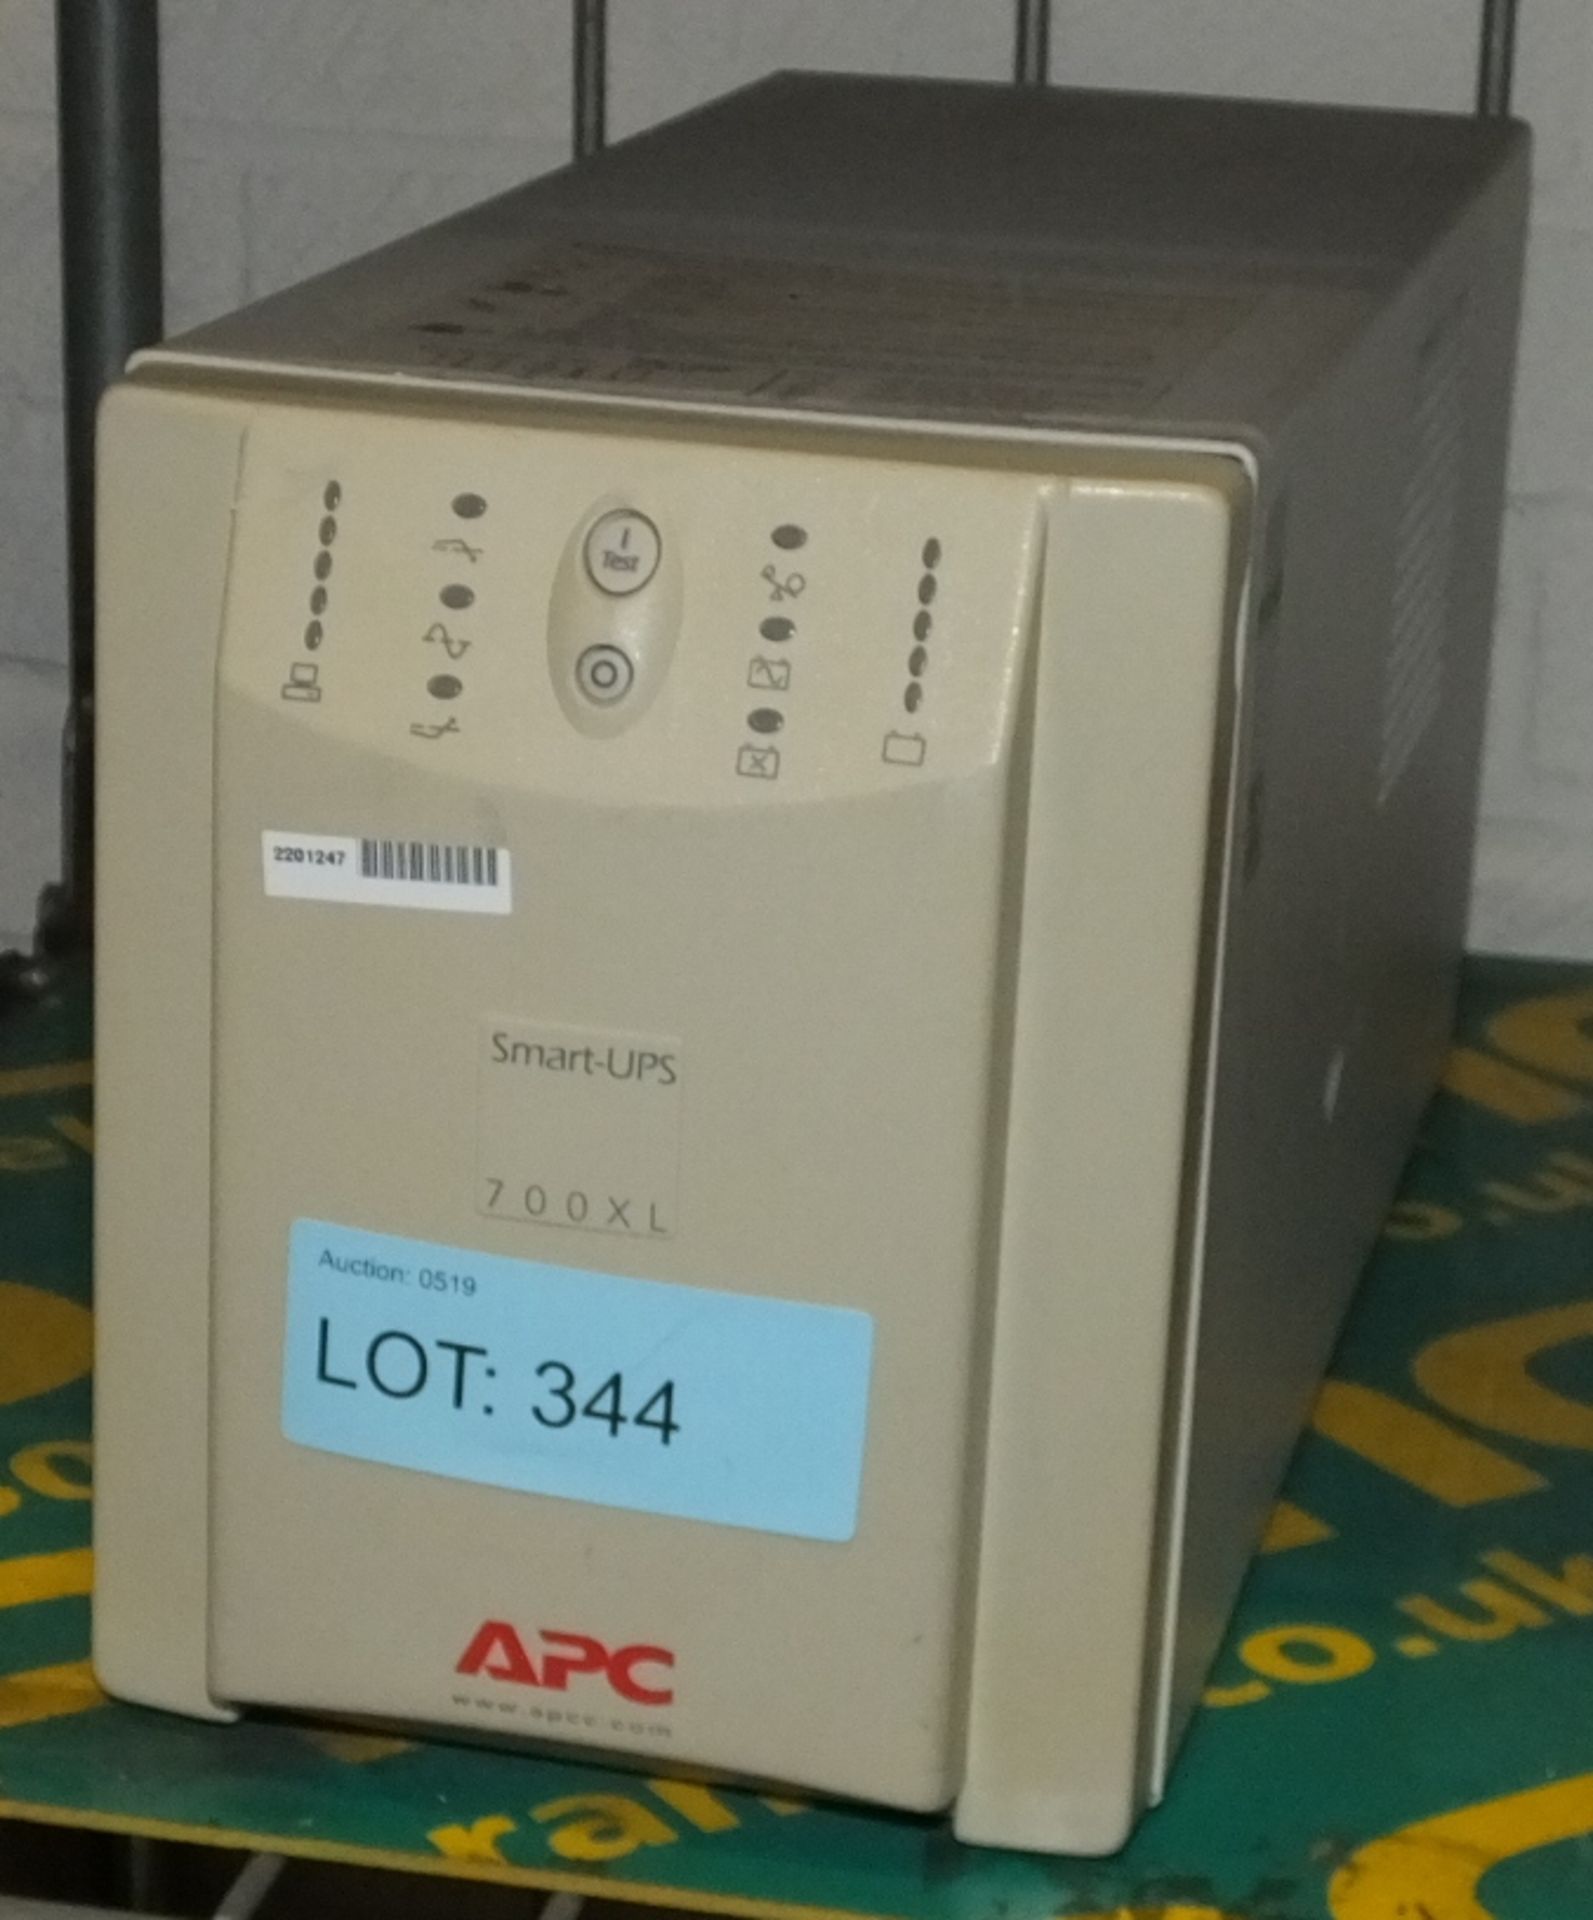 APC 700XL Smart-UPS